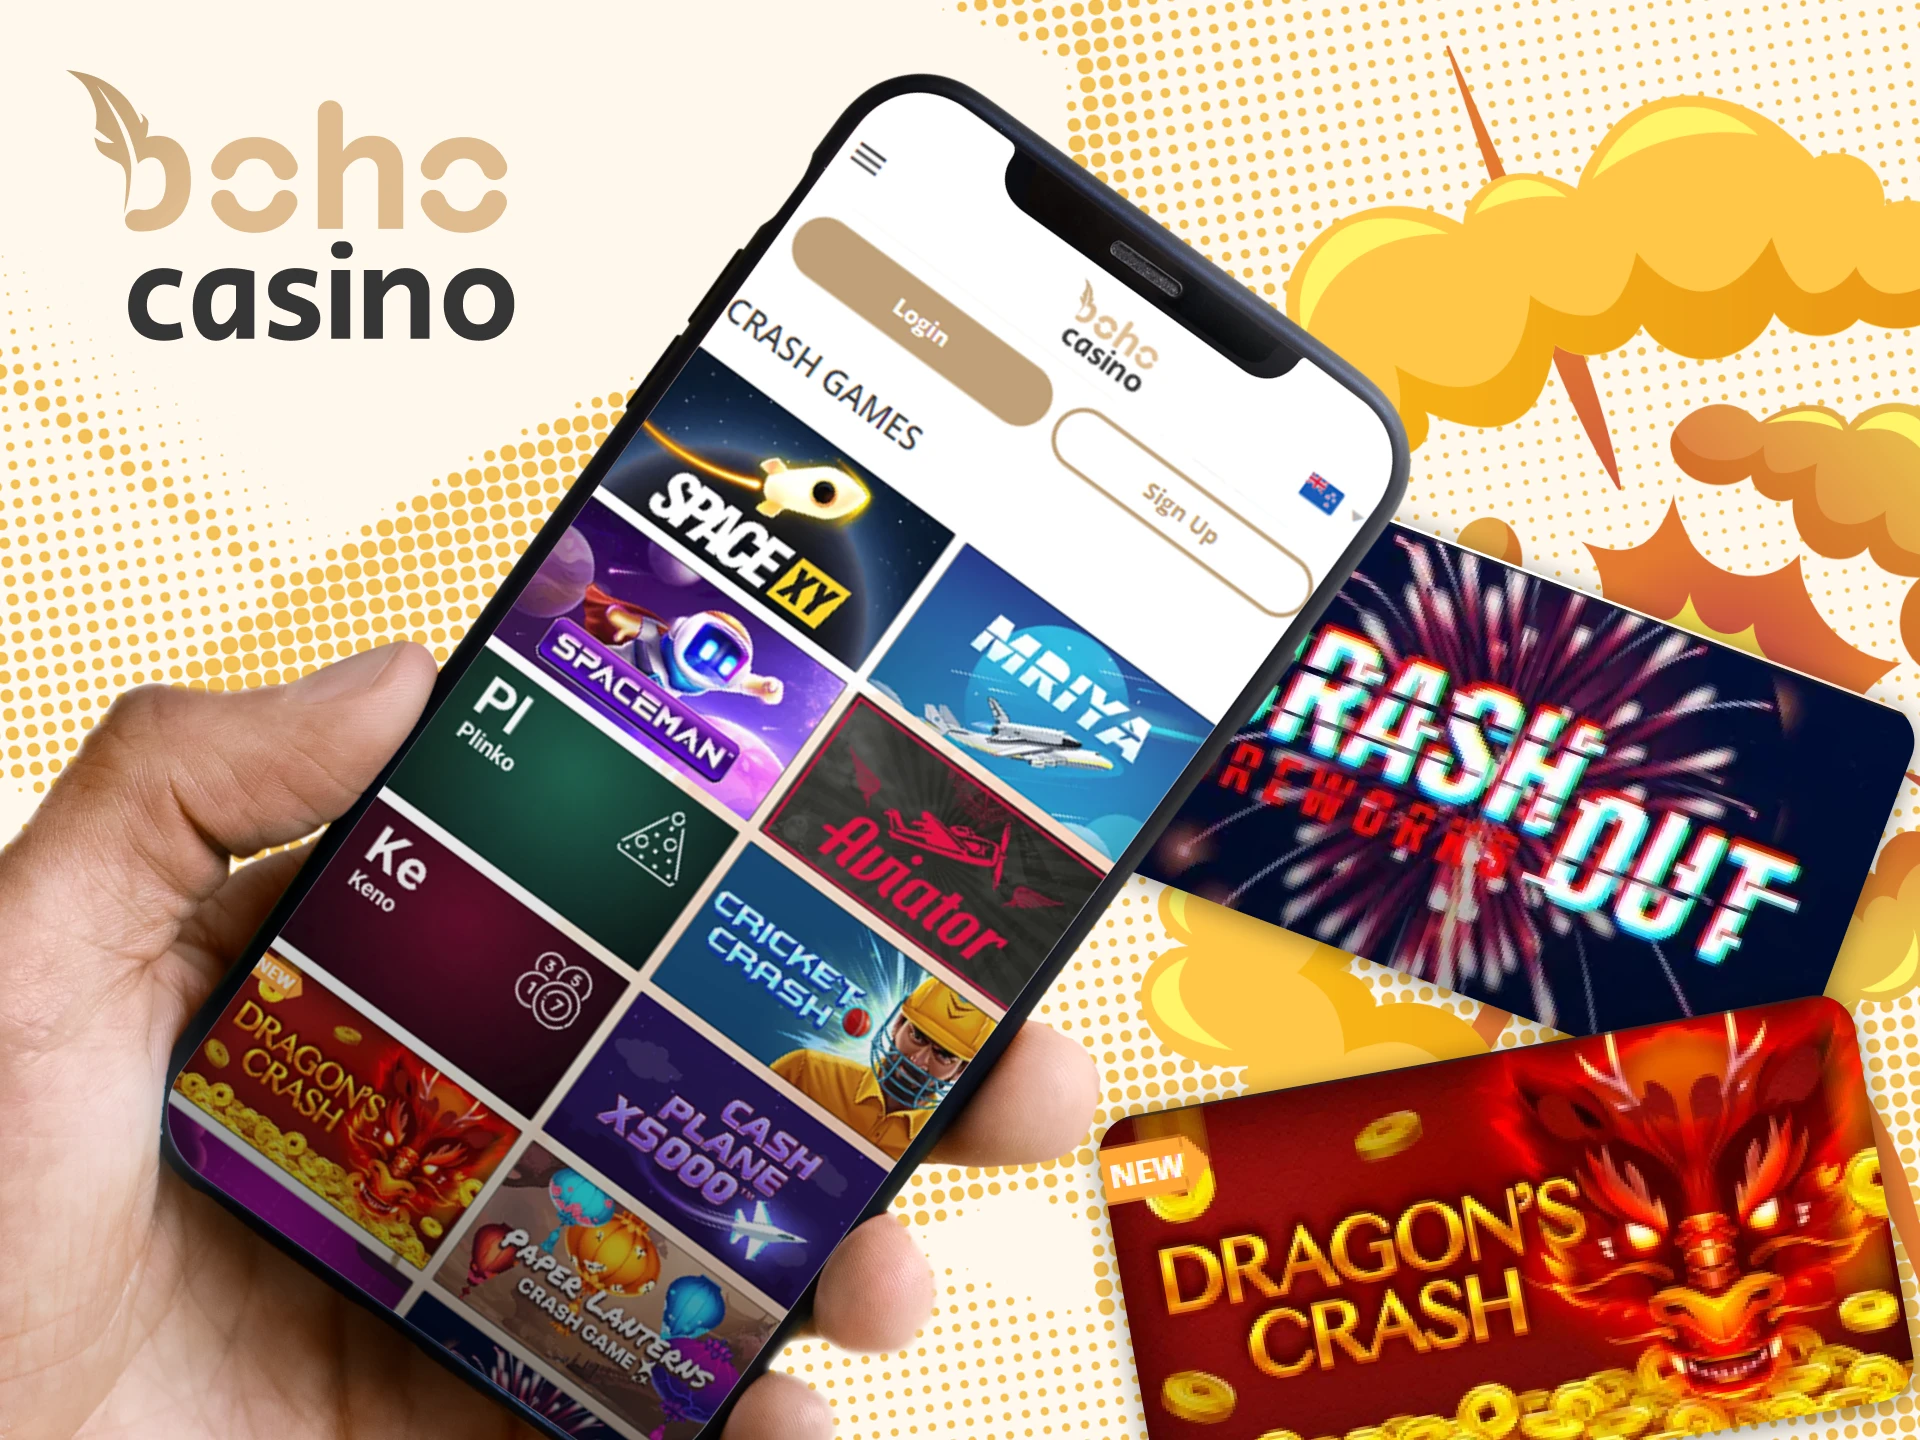 You can play Boho Casino crash games via mobile app.